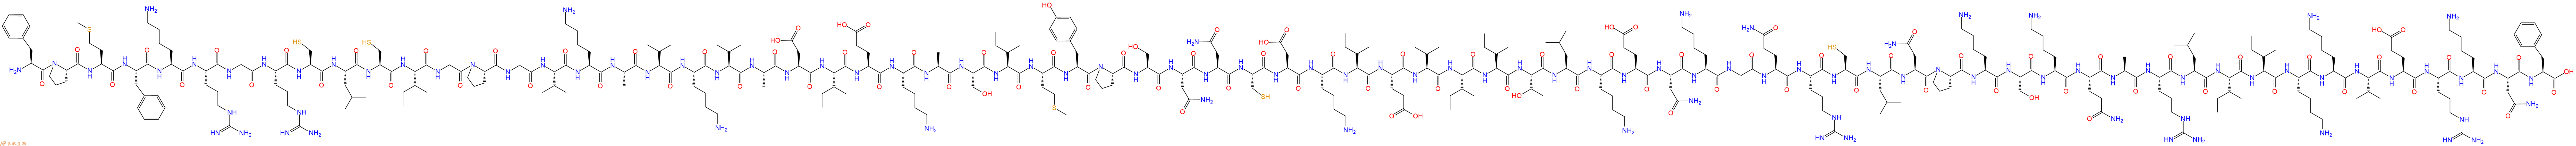 专肽生物产品H2N-Phe-Pro-Met-Phe-Lys-Arg-Gly-Arg-Cys-Leu-Cys-Il